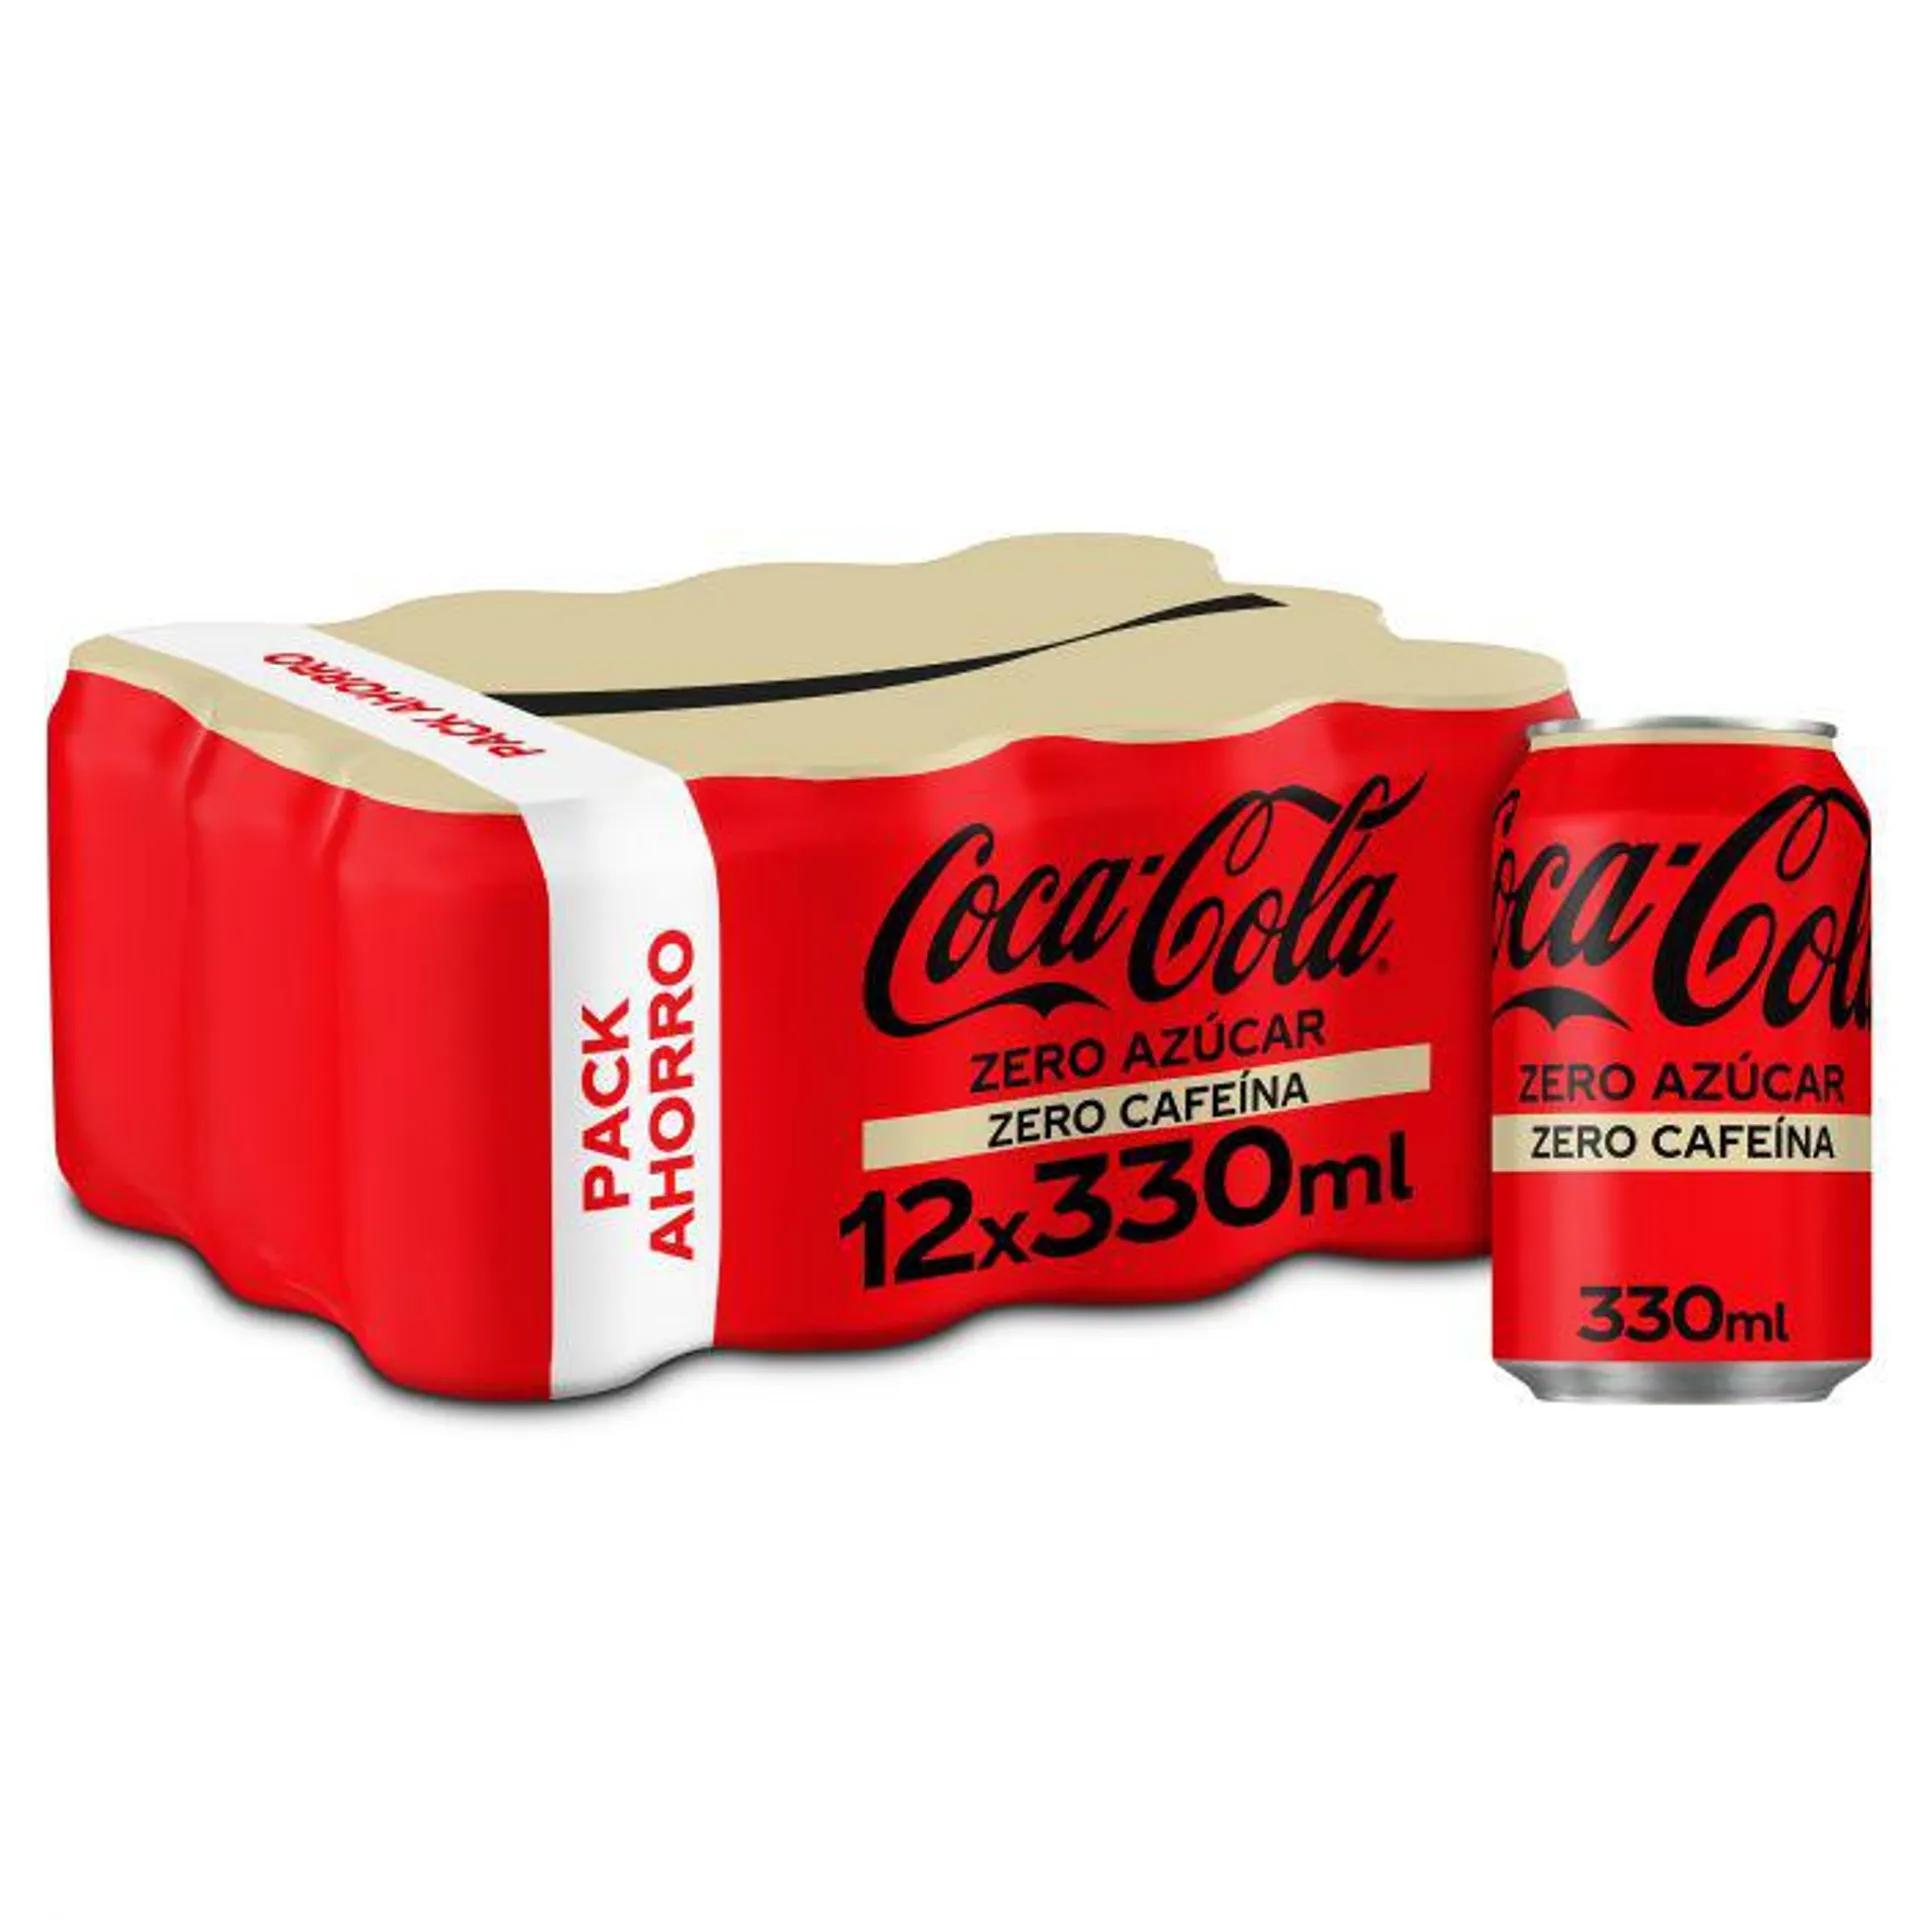 Refresco zero zero cola coca cola p-12 33cl